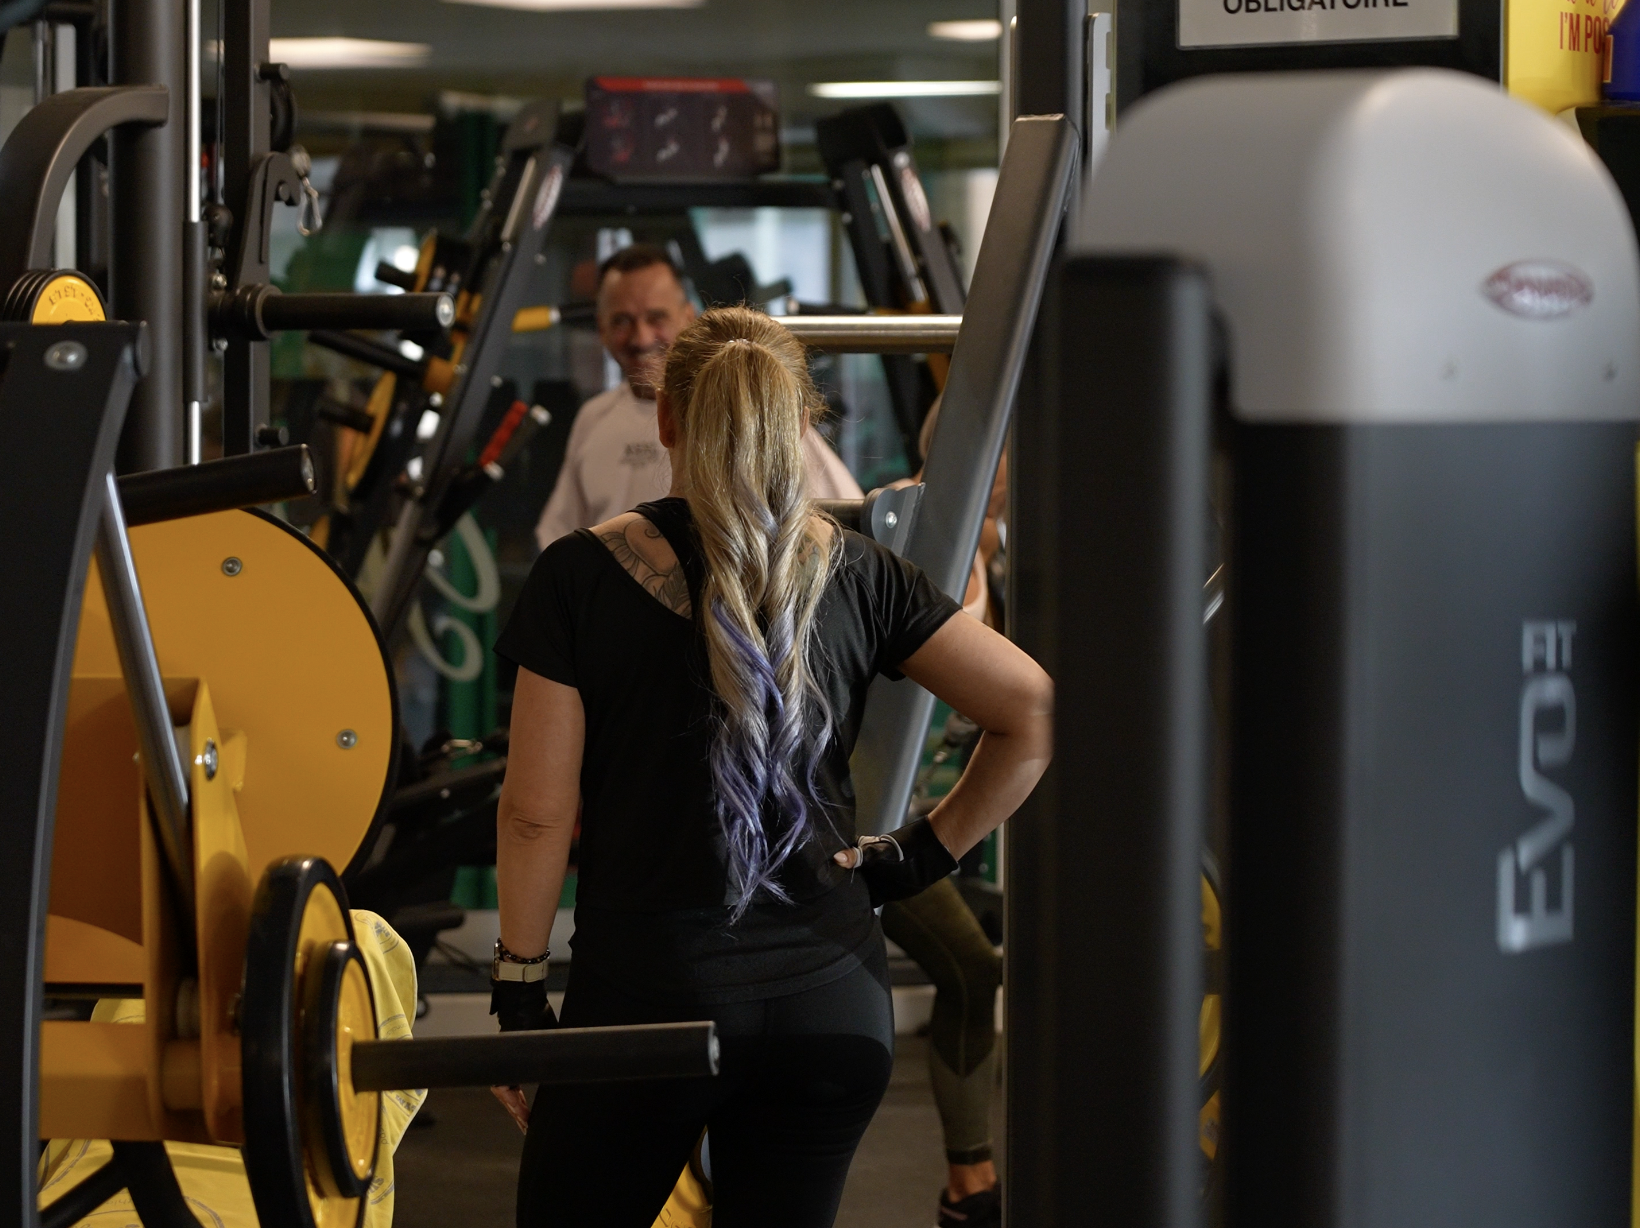 Salle de gym : pratiquez votre sport avec des machines de musculation de dernière génération